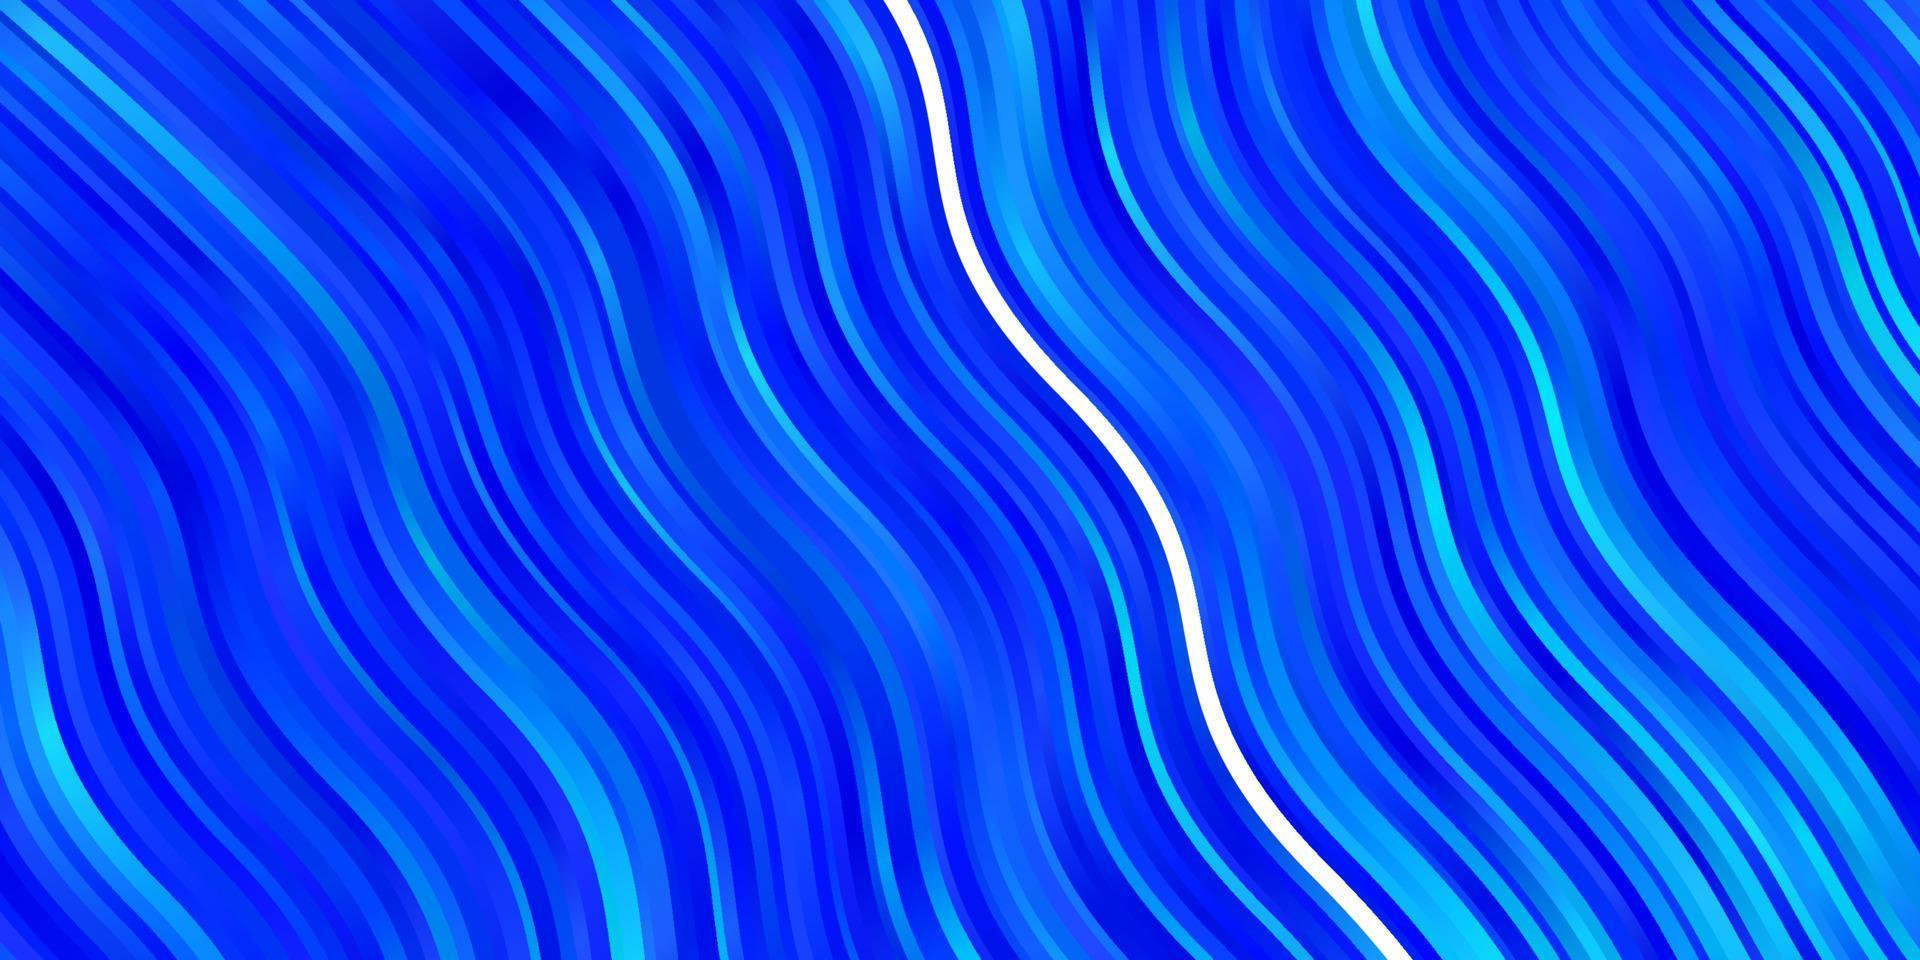 textura de vector azul claro con curvas.